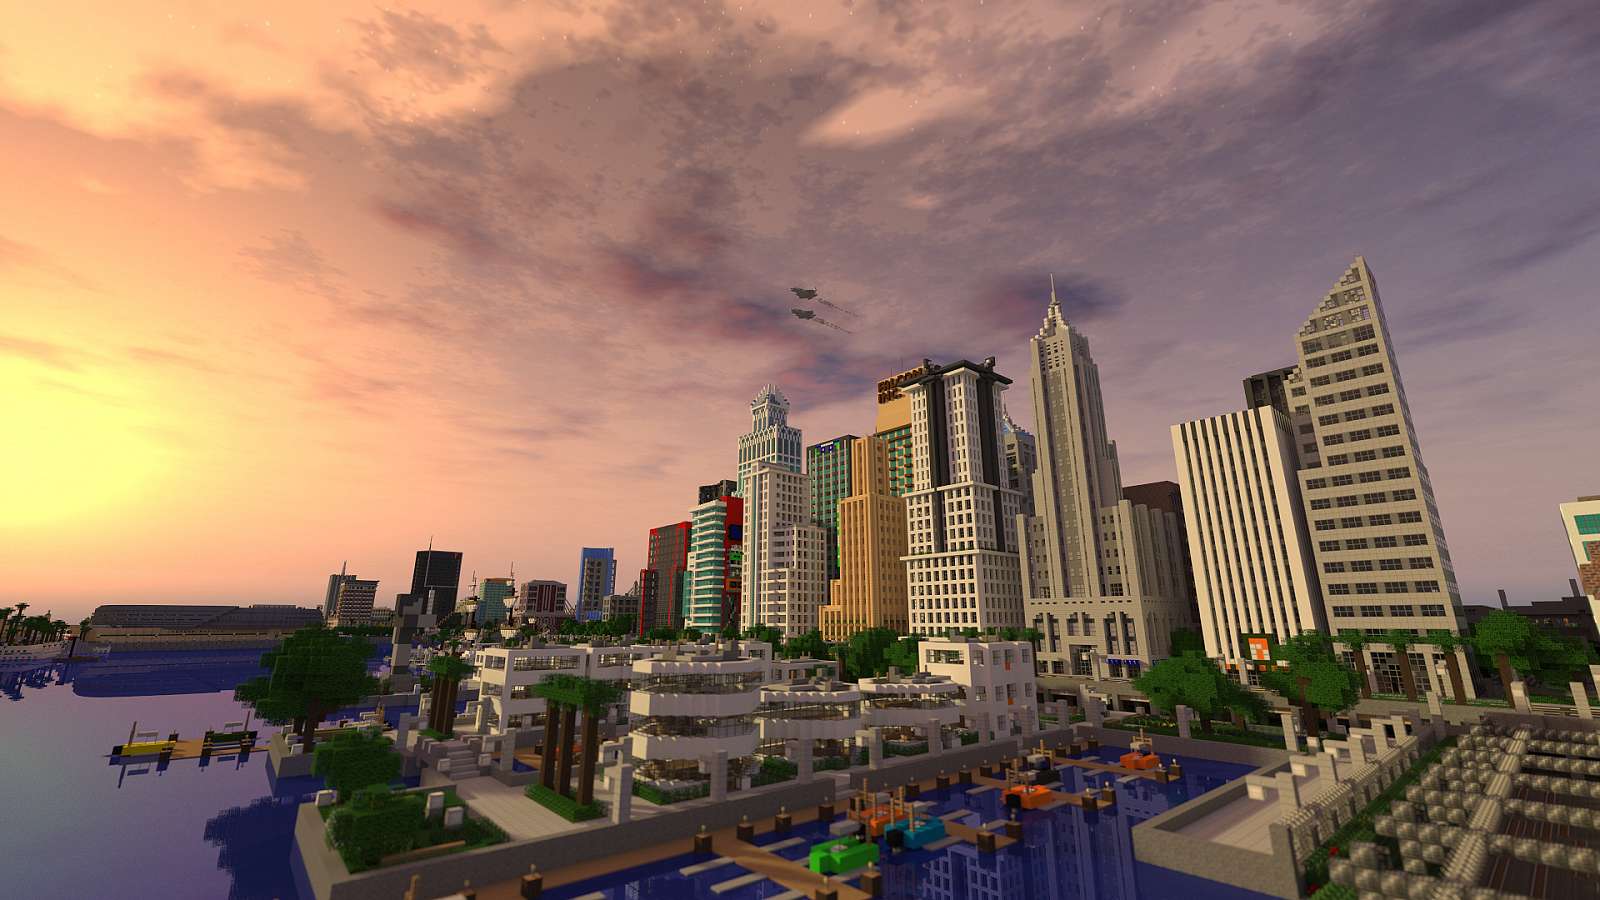 Největší město v Minecraftu se buduje už 9 let